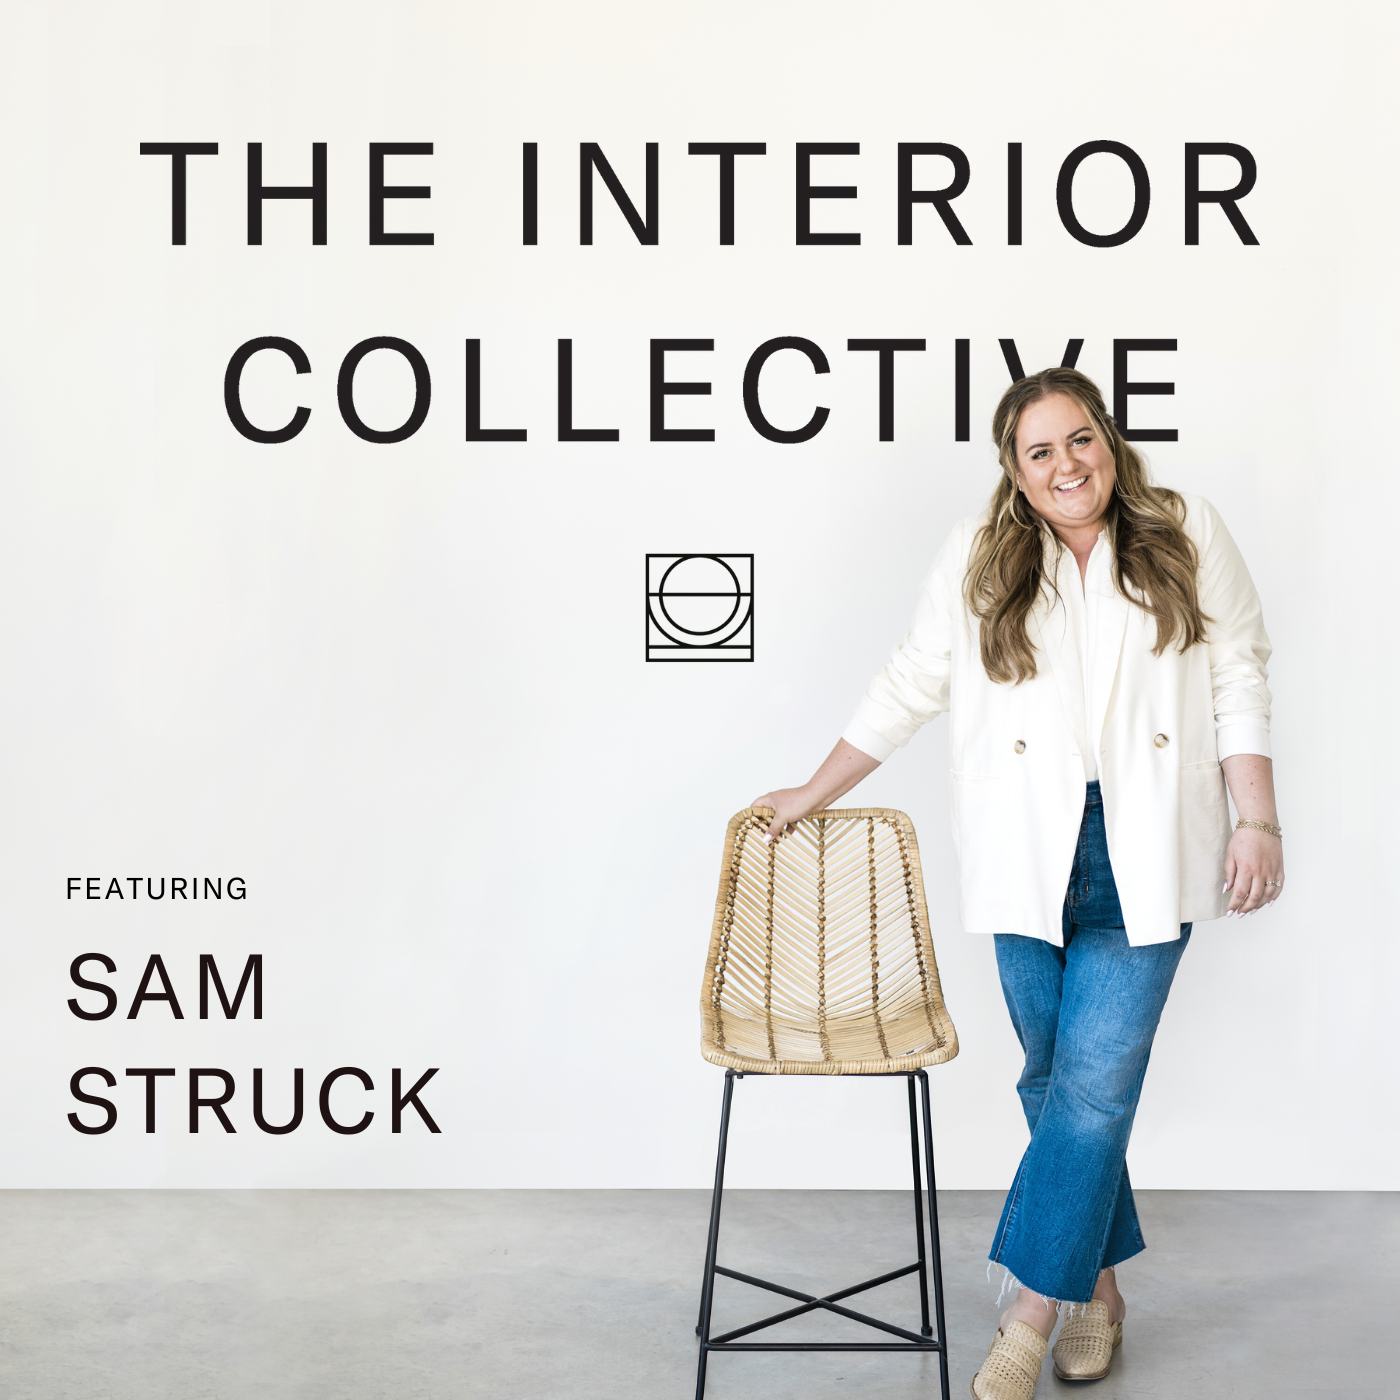 Samantha Struck: Design Documentation